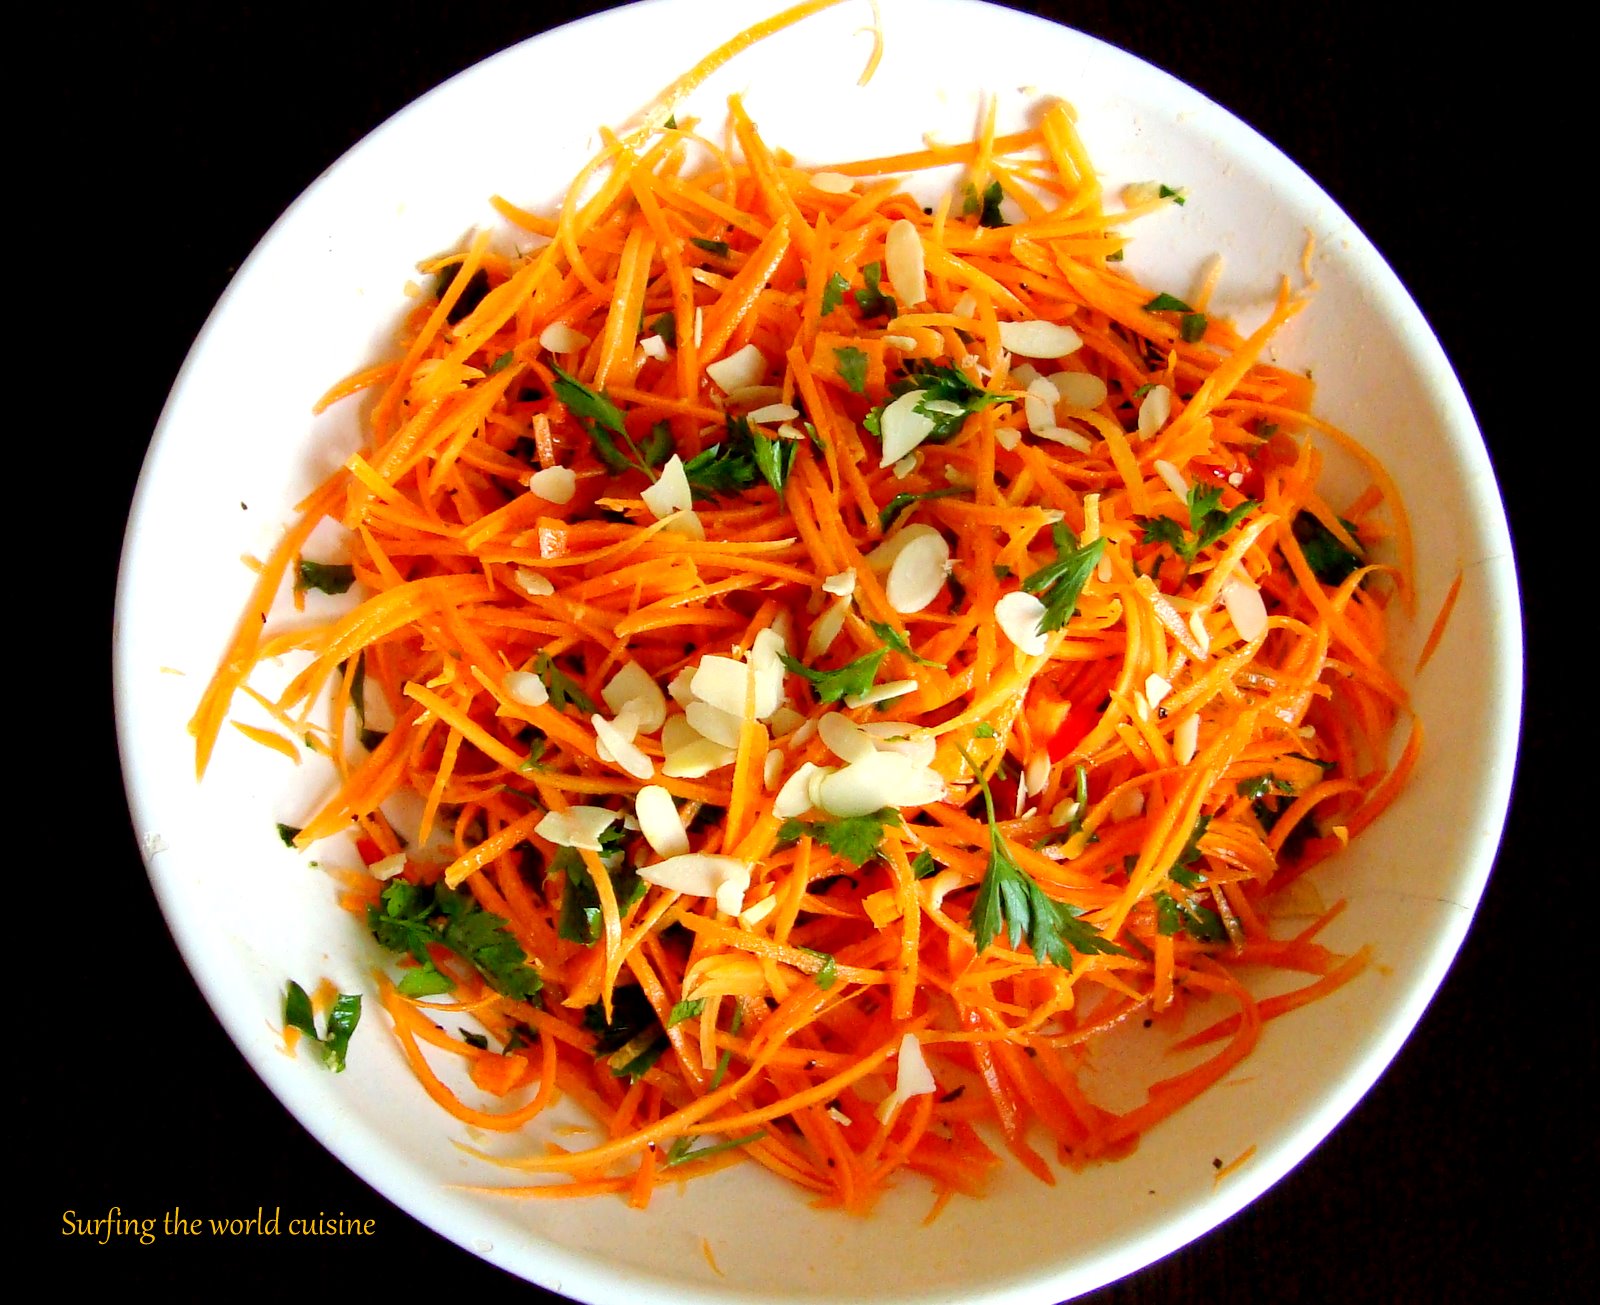 Морковь по-корейски. калорийность на 100 грамм при диете, белки, жиры, углеводы, польза и вред